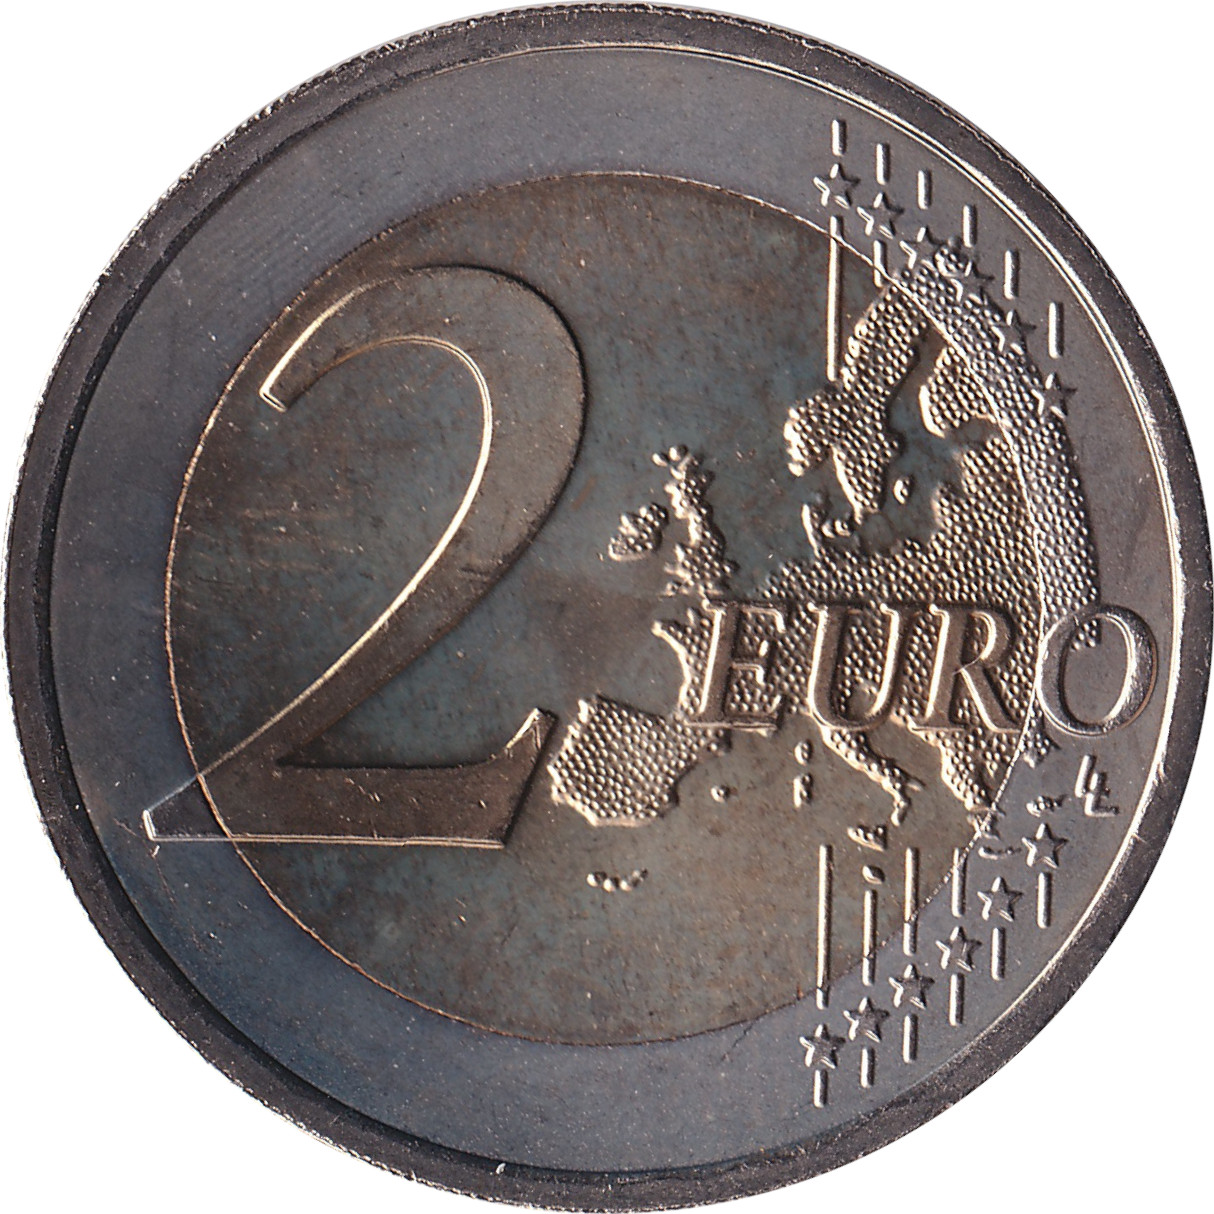 2 euro - Circulation of the Euro